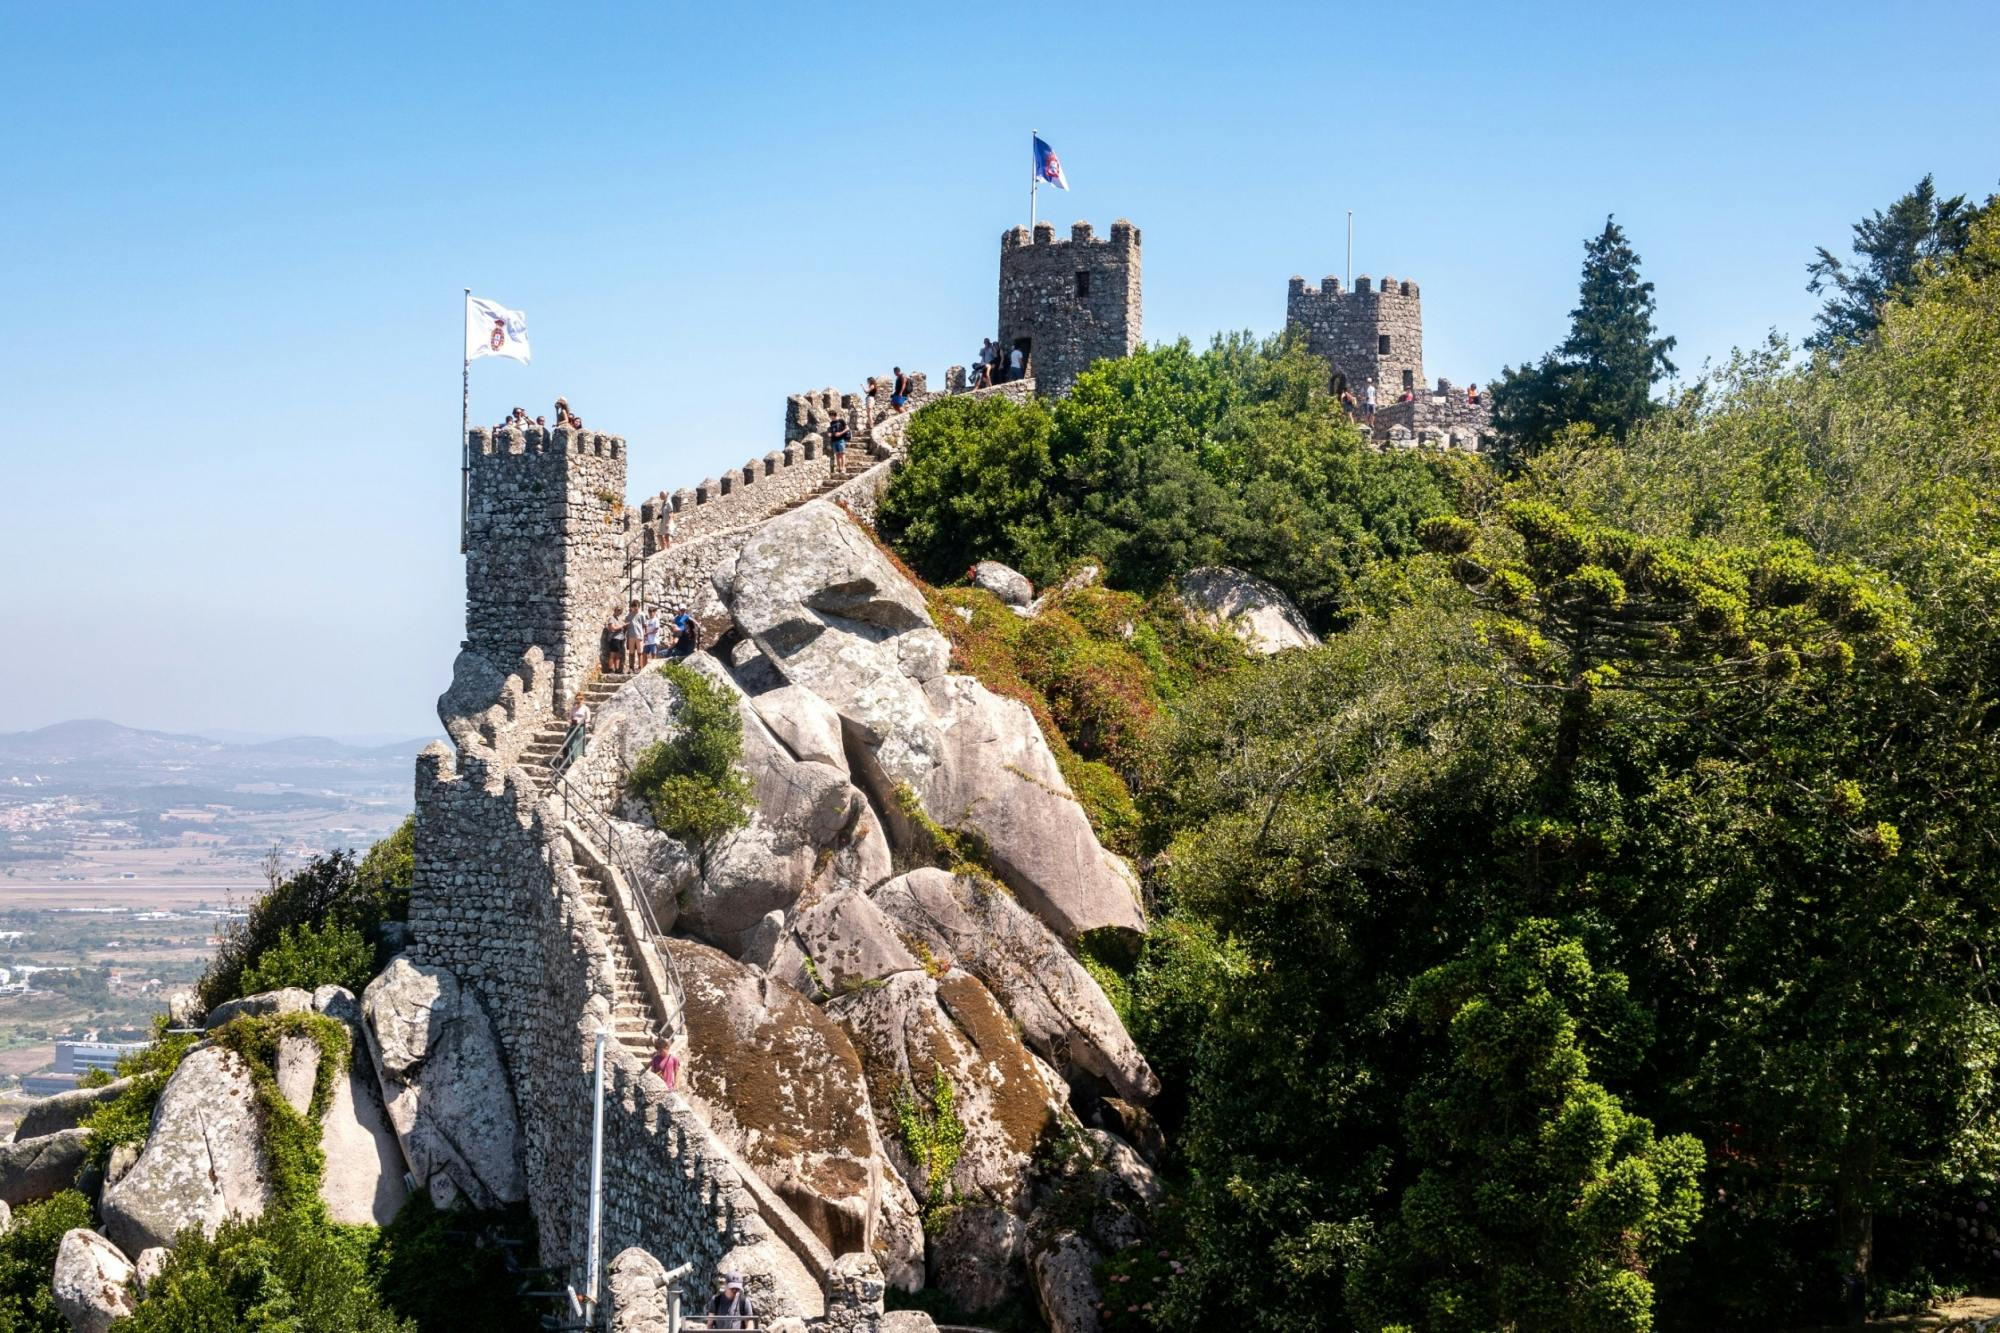 Moors kasteel en Quinta da Regaleira e-tickets met zelfgeleide audiotour door Sintra